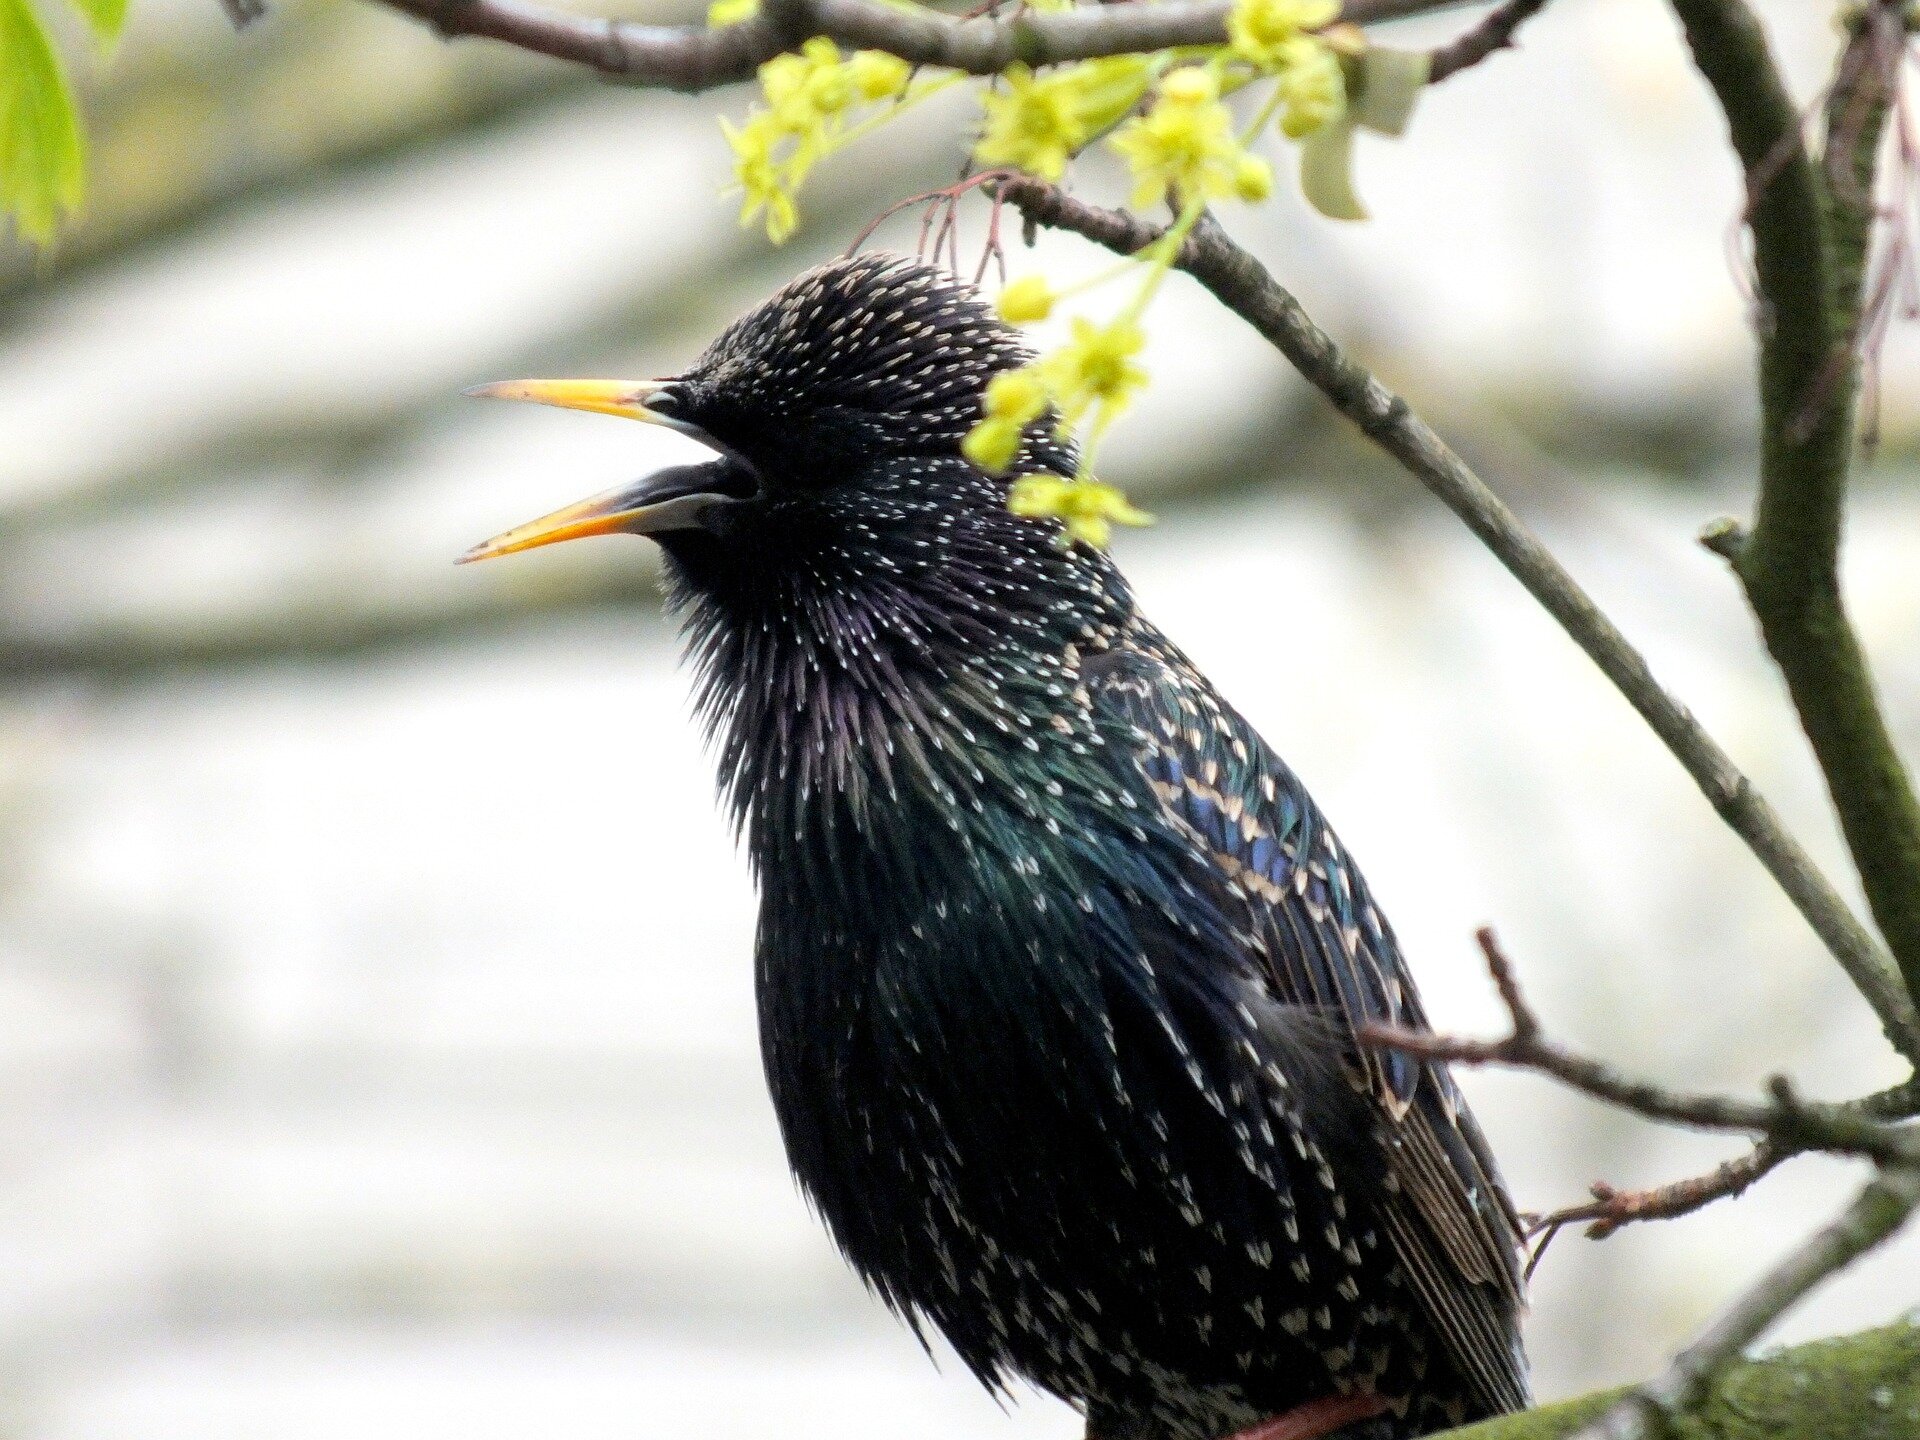 Ouvir o canto de pássaros é bom para a saúde mental - Planeta